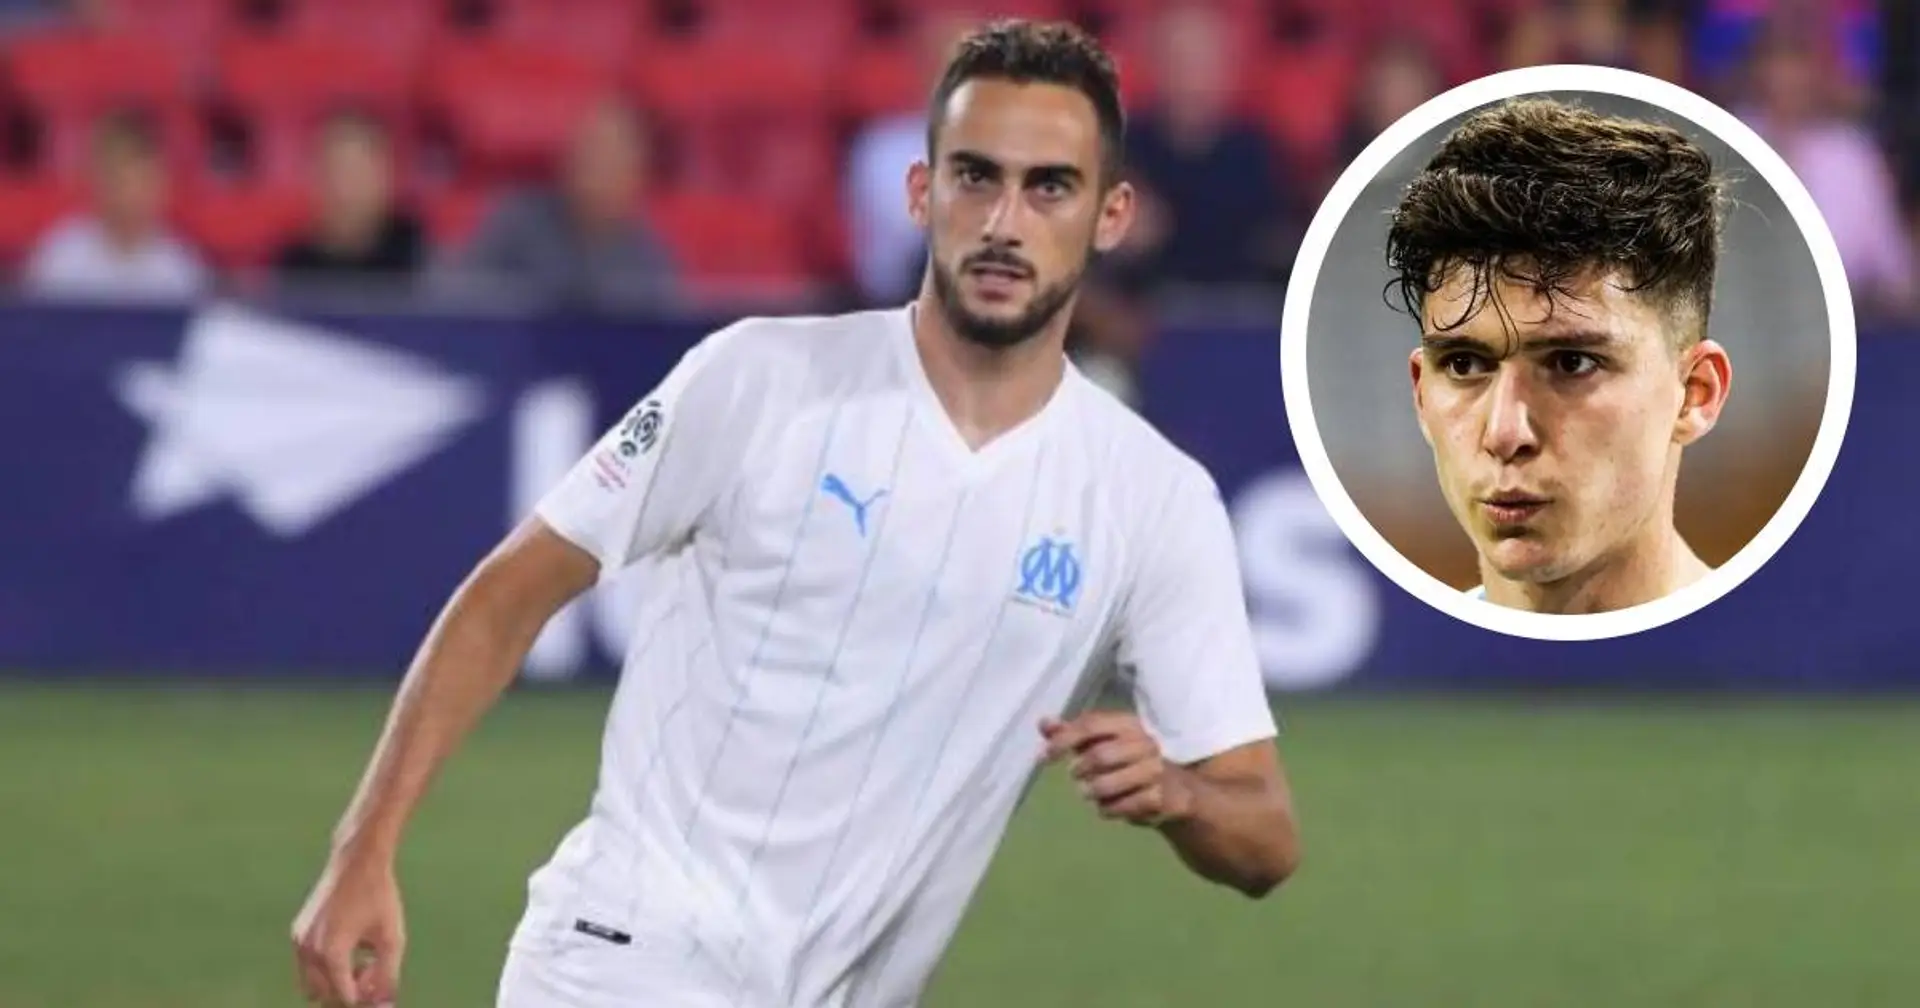 "Il a peu joué, comme moi à Dortmund, je m'identifie beaucoup à lui", Balerdi montre son respect envers Lucas Perrin